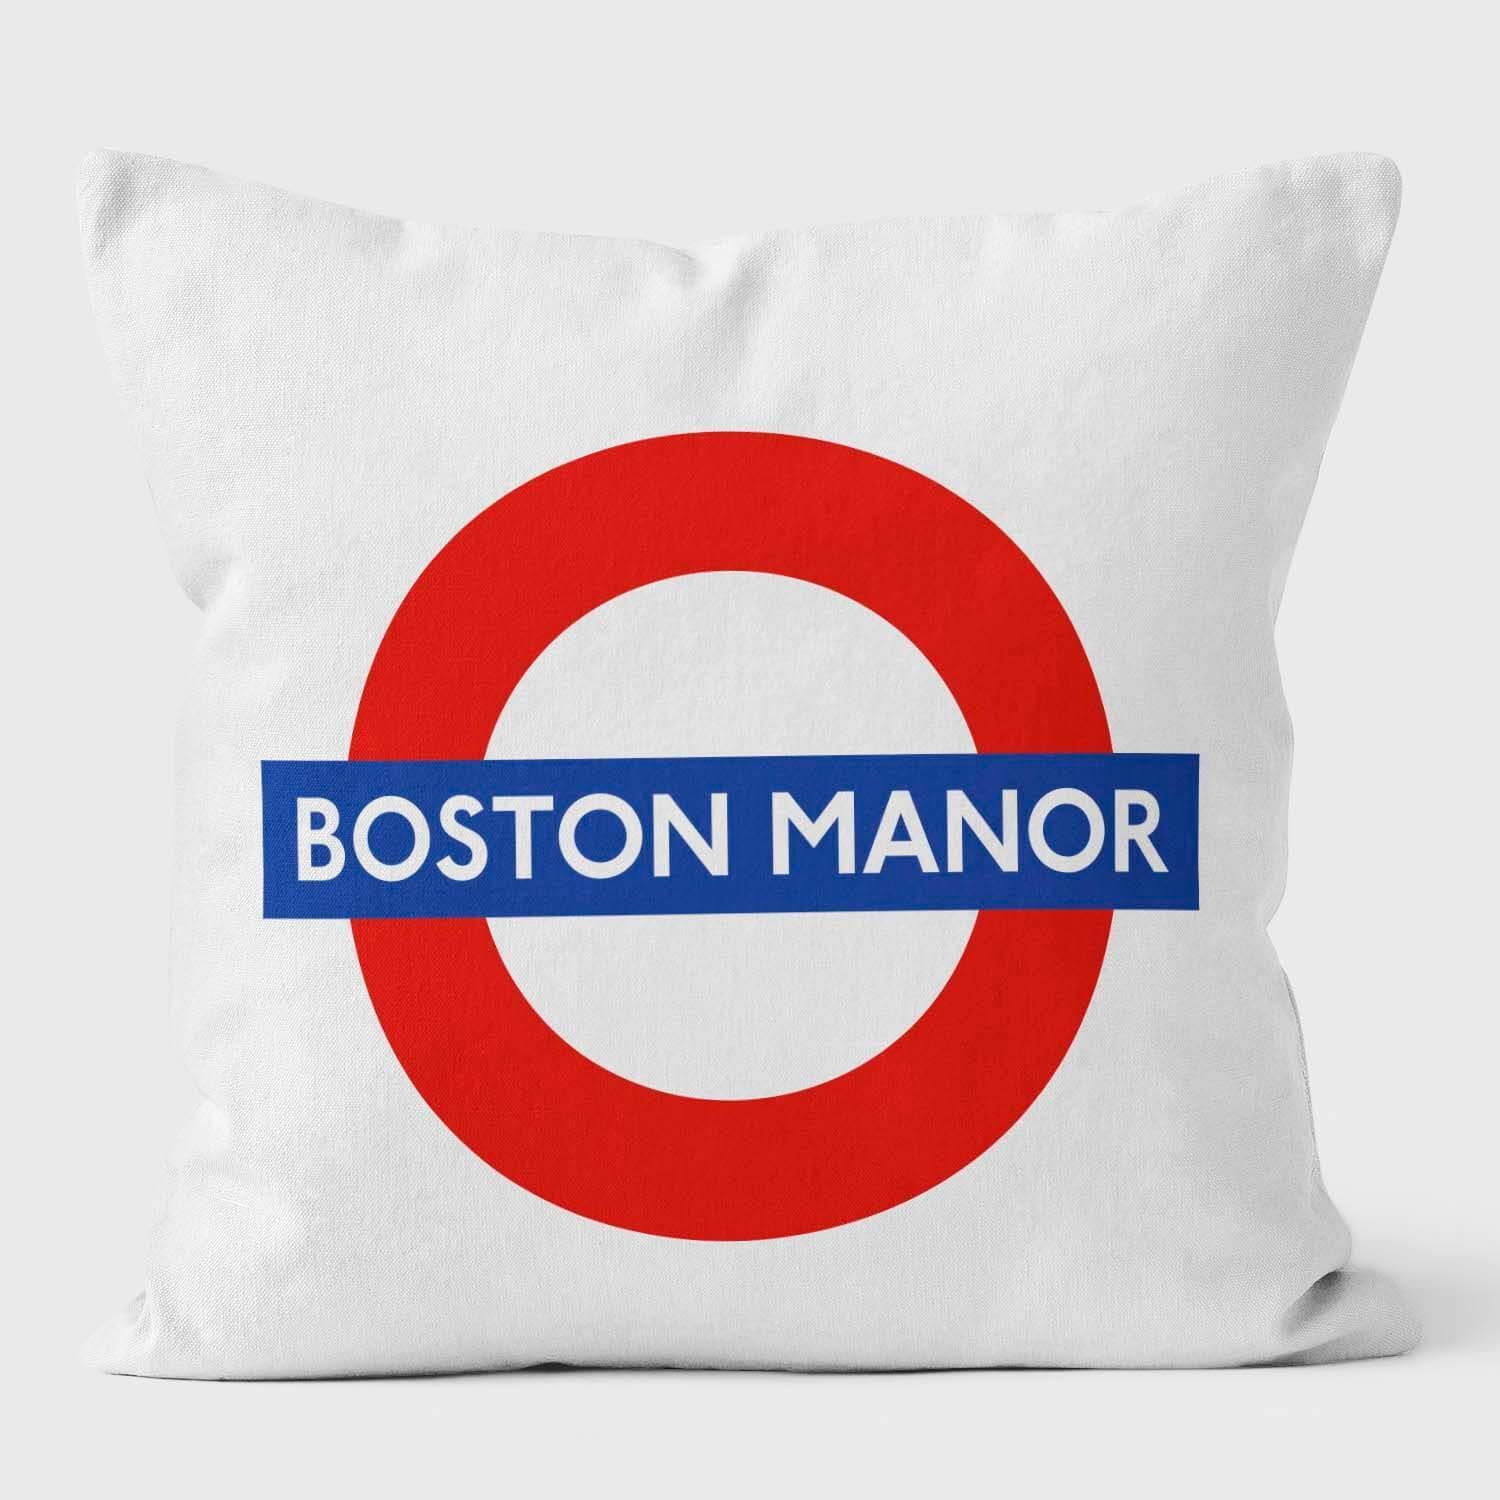 Boston Manor London Underground Tube Station Roundel Cushion - Handmade Cushions UK - WeLoveCushions